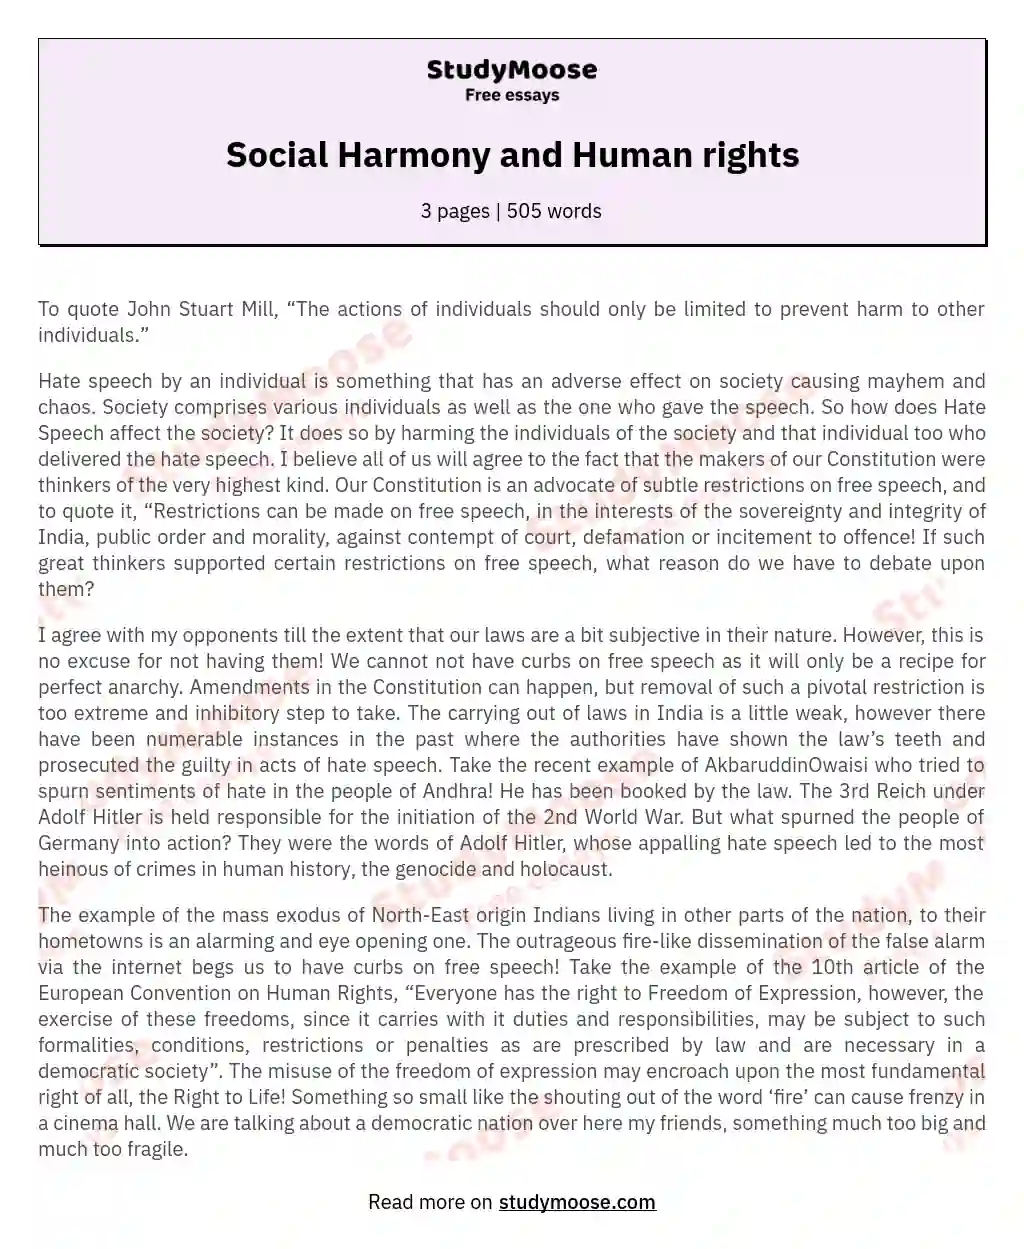 Social Harmony and Human rights essay